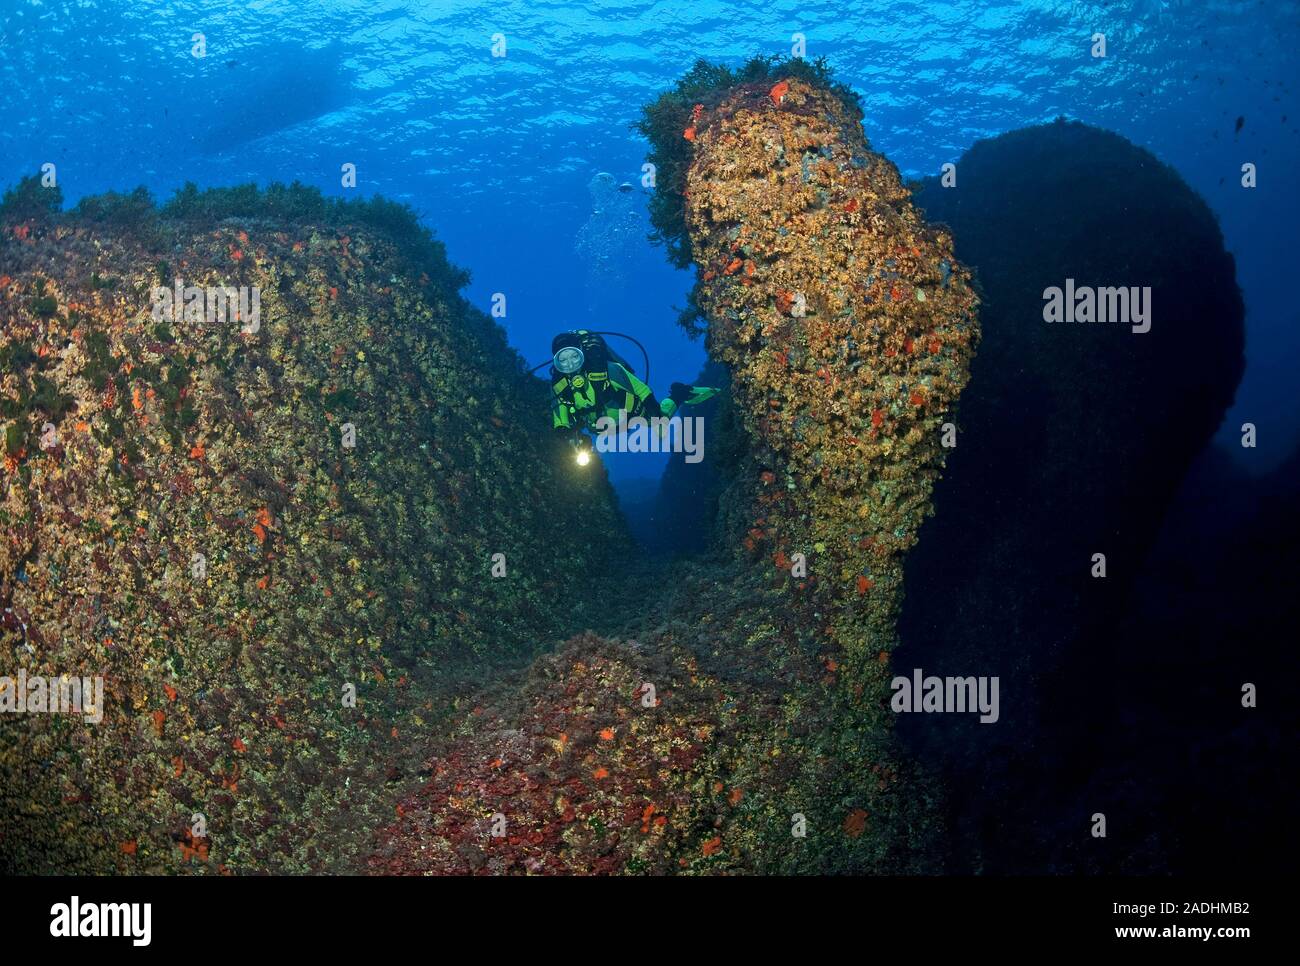 Scuba Diver in un colorato rocky reef, riserva naturale e parco marino Dragonera, Sant Elm, Maiorca, isole Baleari, Spagna Foto Stock